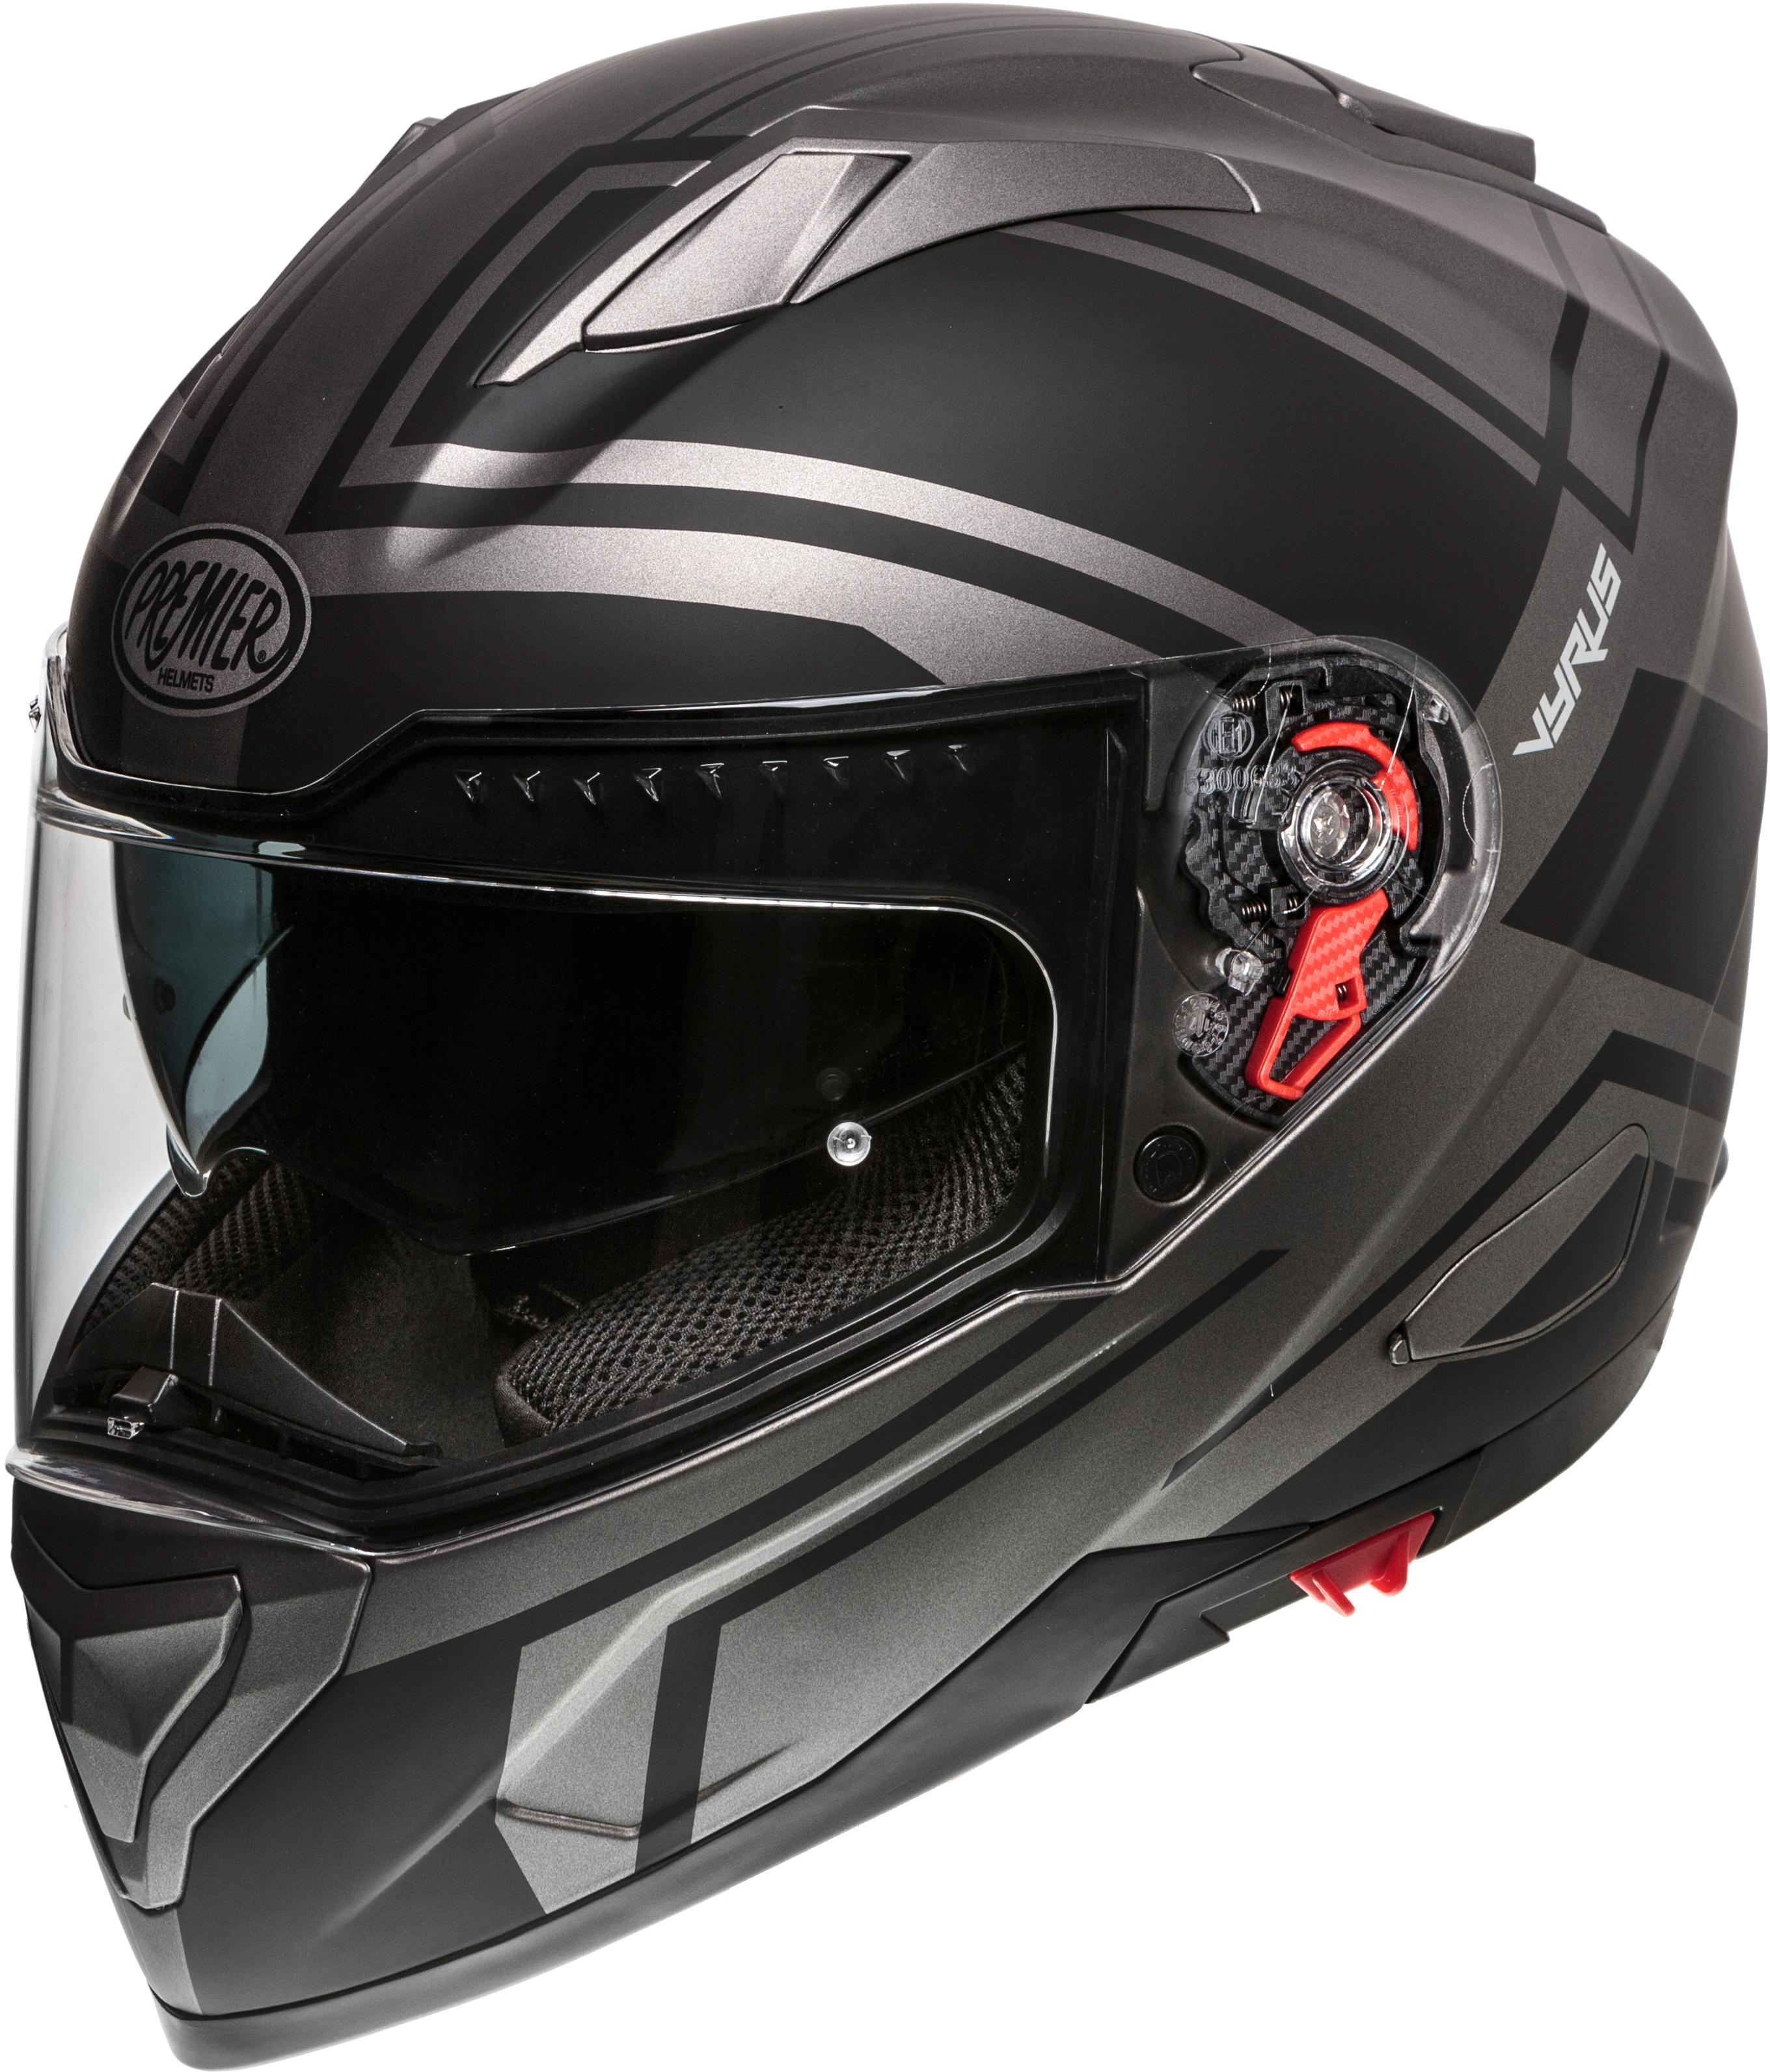 Premier Vyrus Helmet Black/Gun Matt - Small